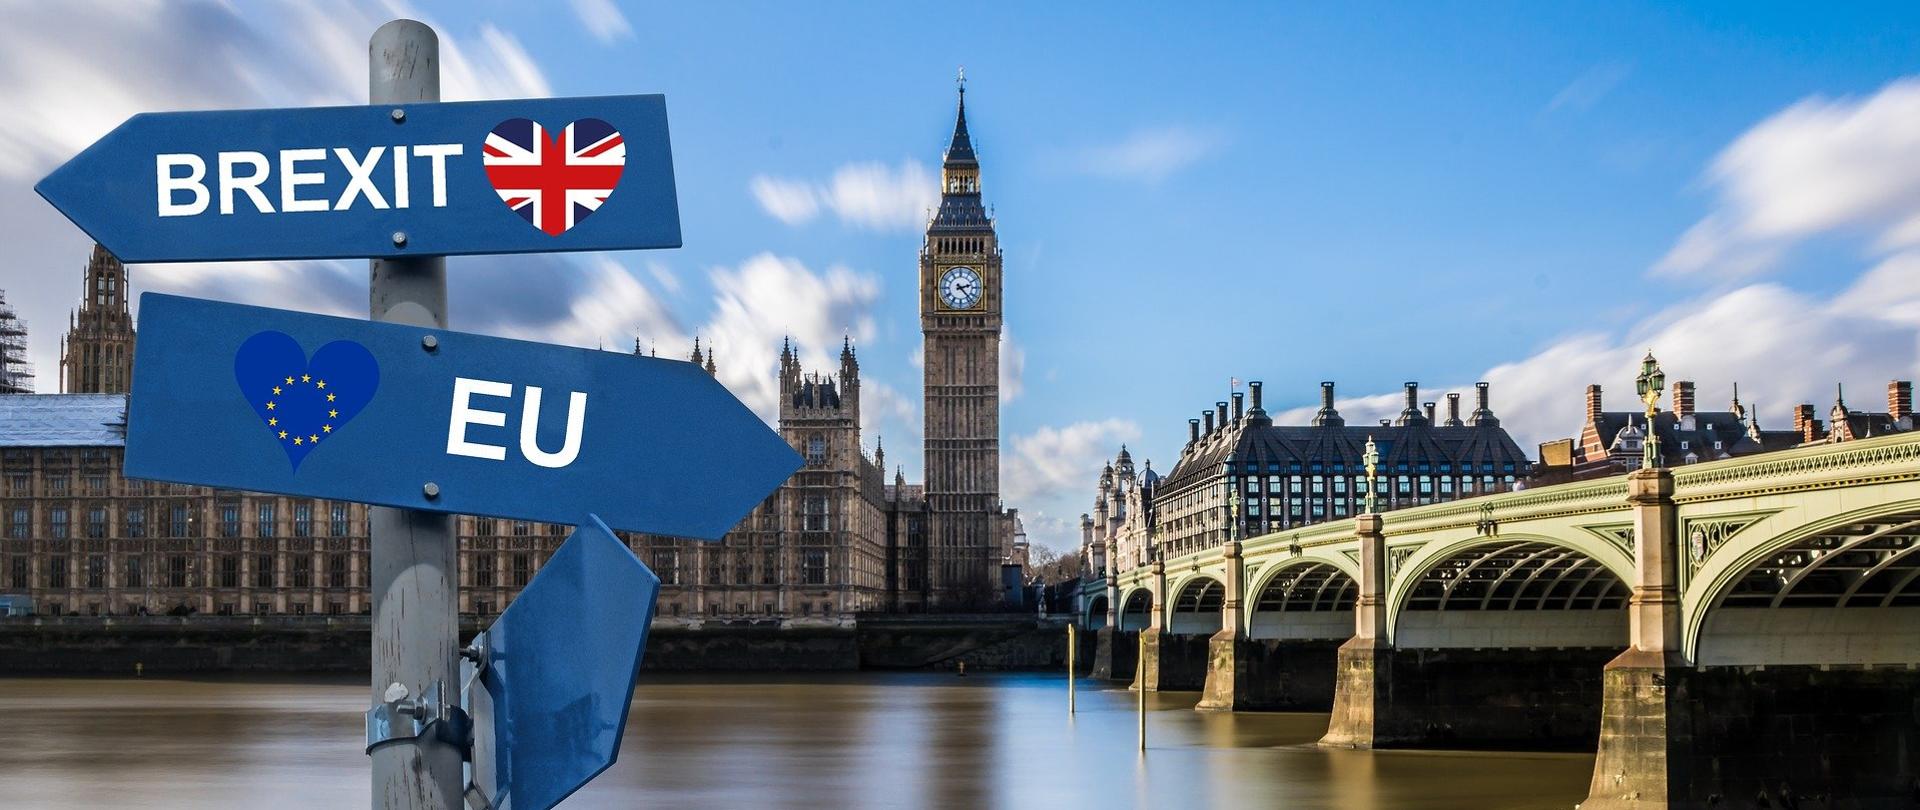 Po lewej stronie kadru widnieje drogowskaz z niebieskimi dwoma tablicami. Jedna z nich wskazuje kierunek Brexitu. Druga, skierowana w prawą stronę wskazuje na Europę. W tle Big Ben oraz londyński most. 